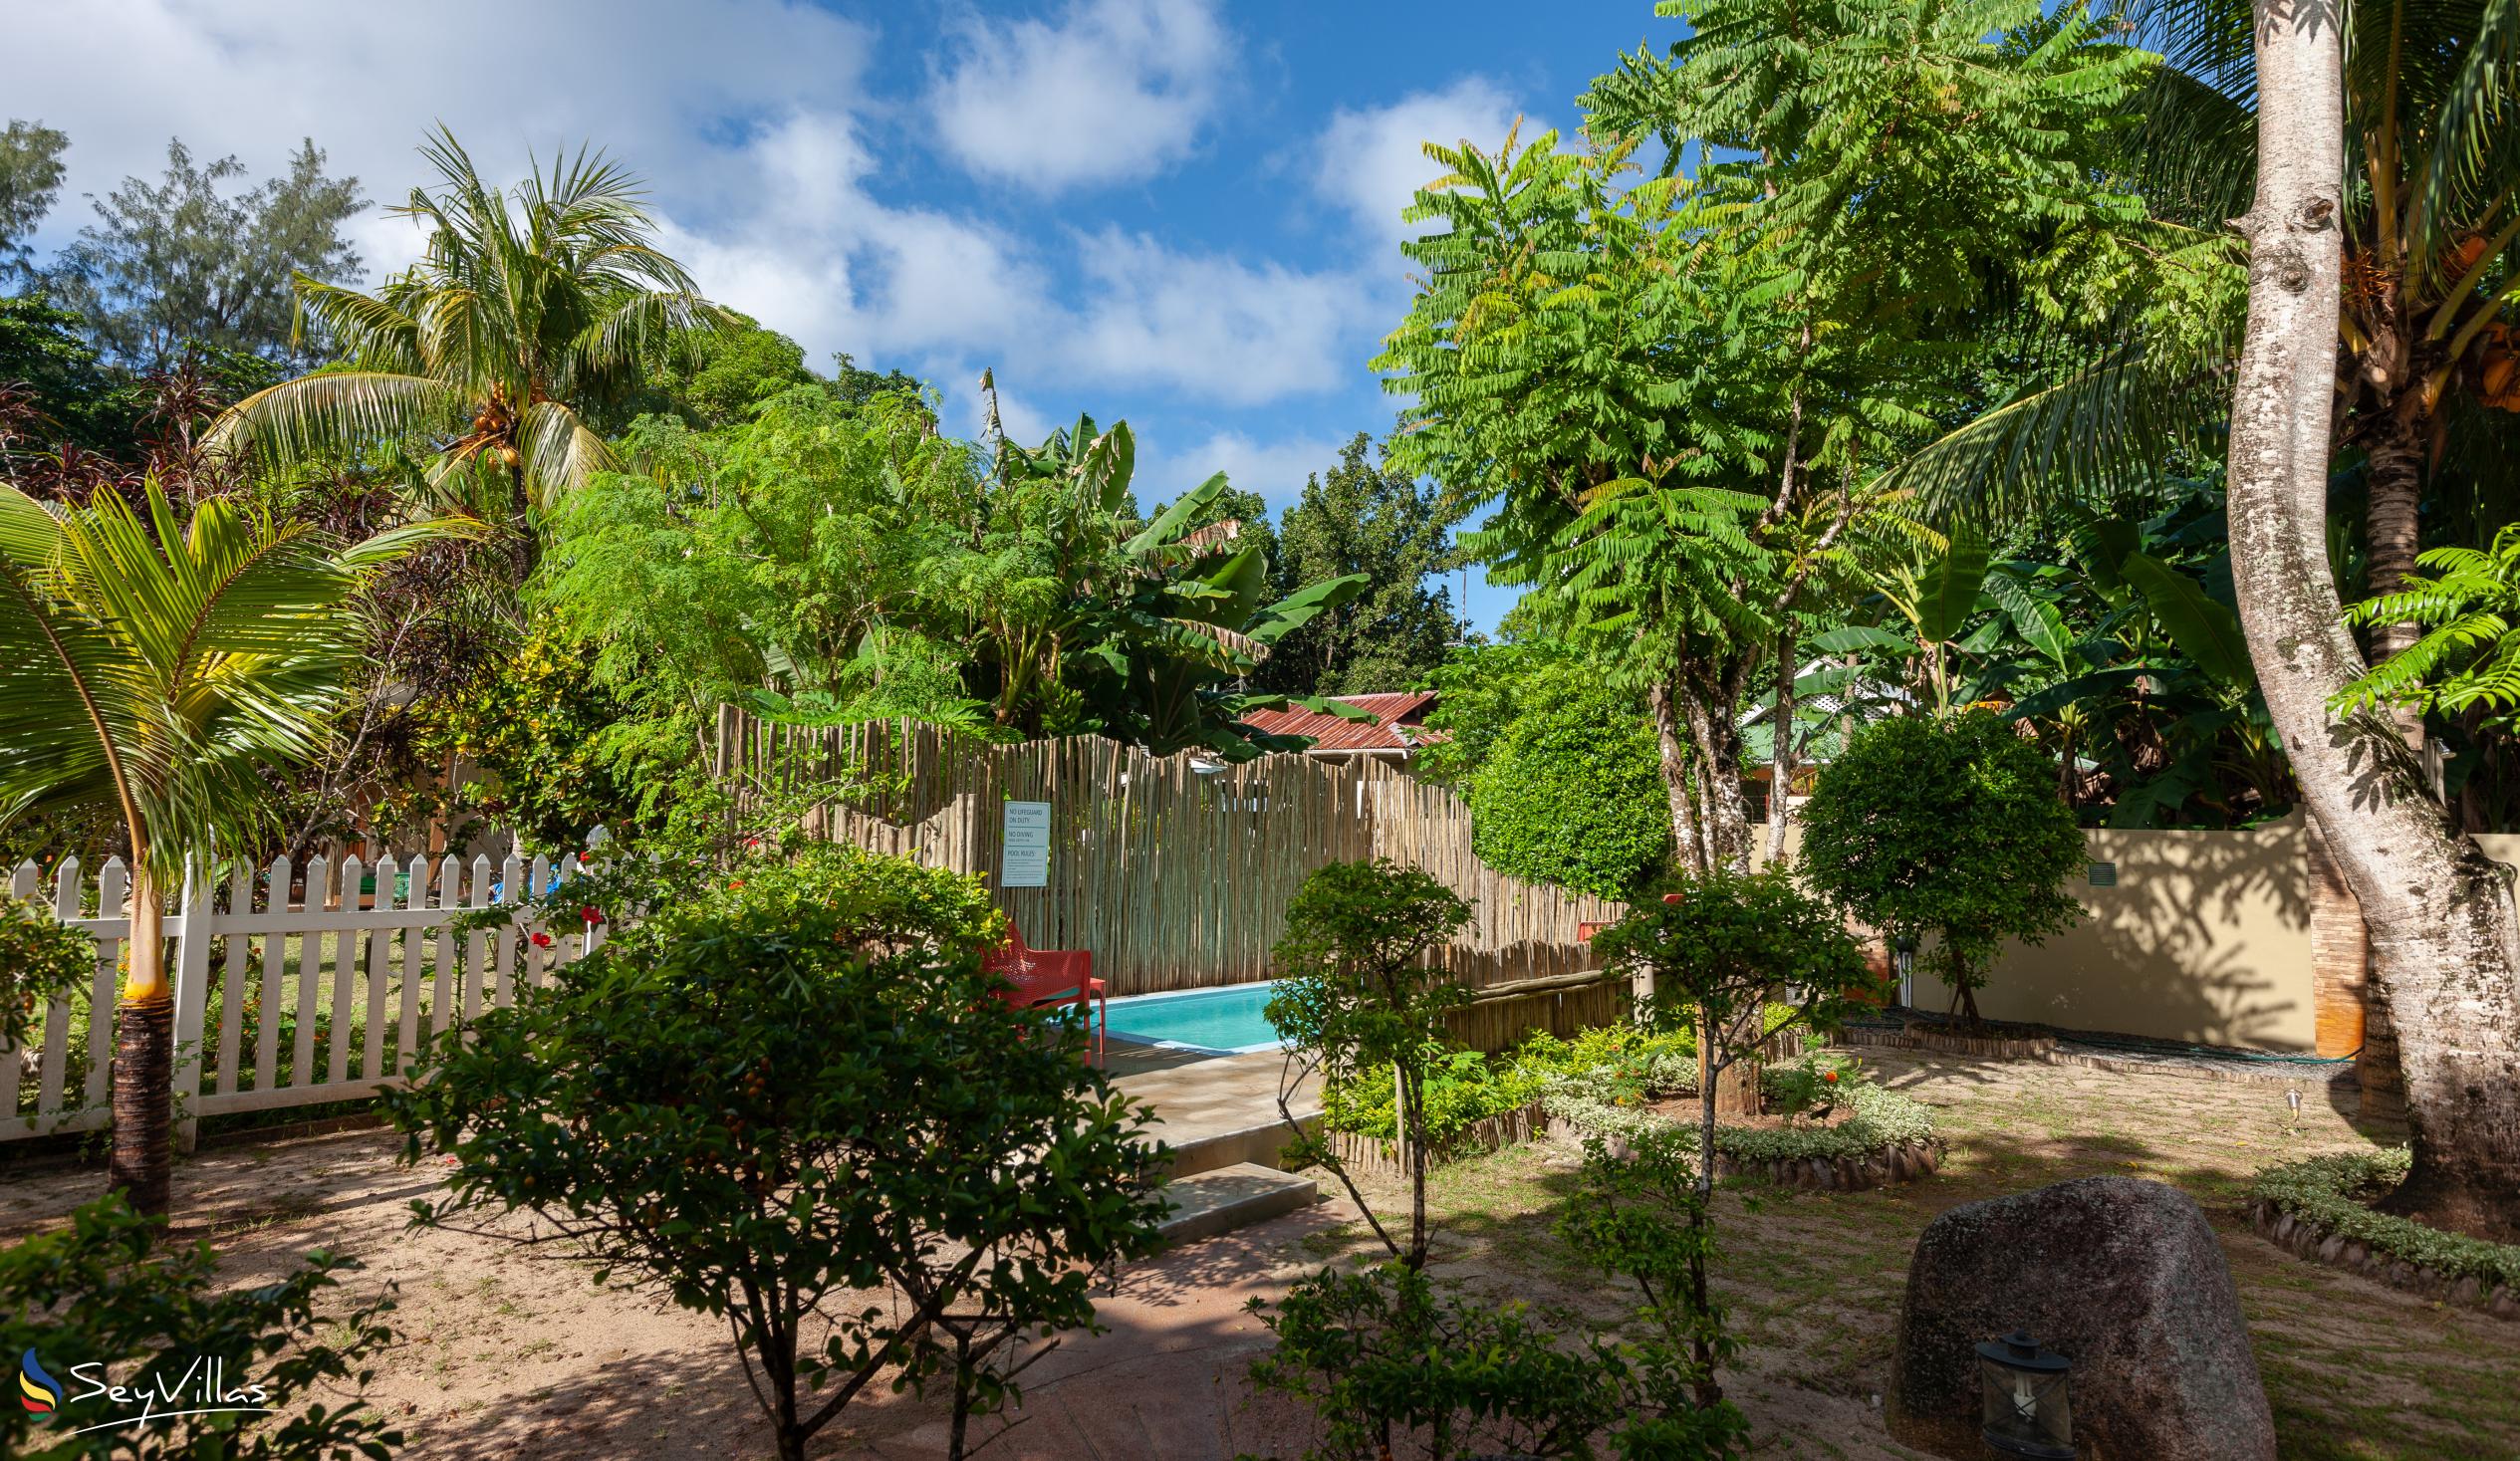 Foto 82: Casa de Leela - Bungalow 2 chambres de luxe avec piscine privée - La Digue (Seychelles)